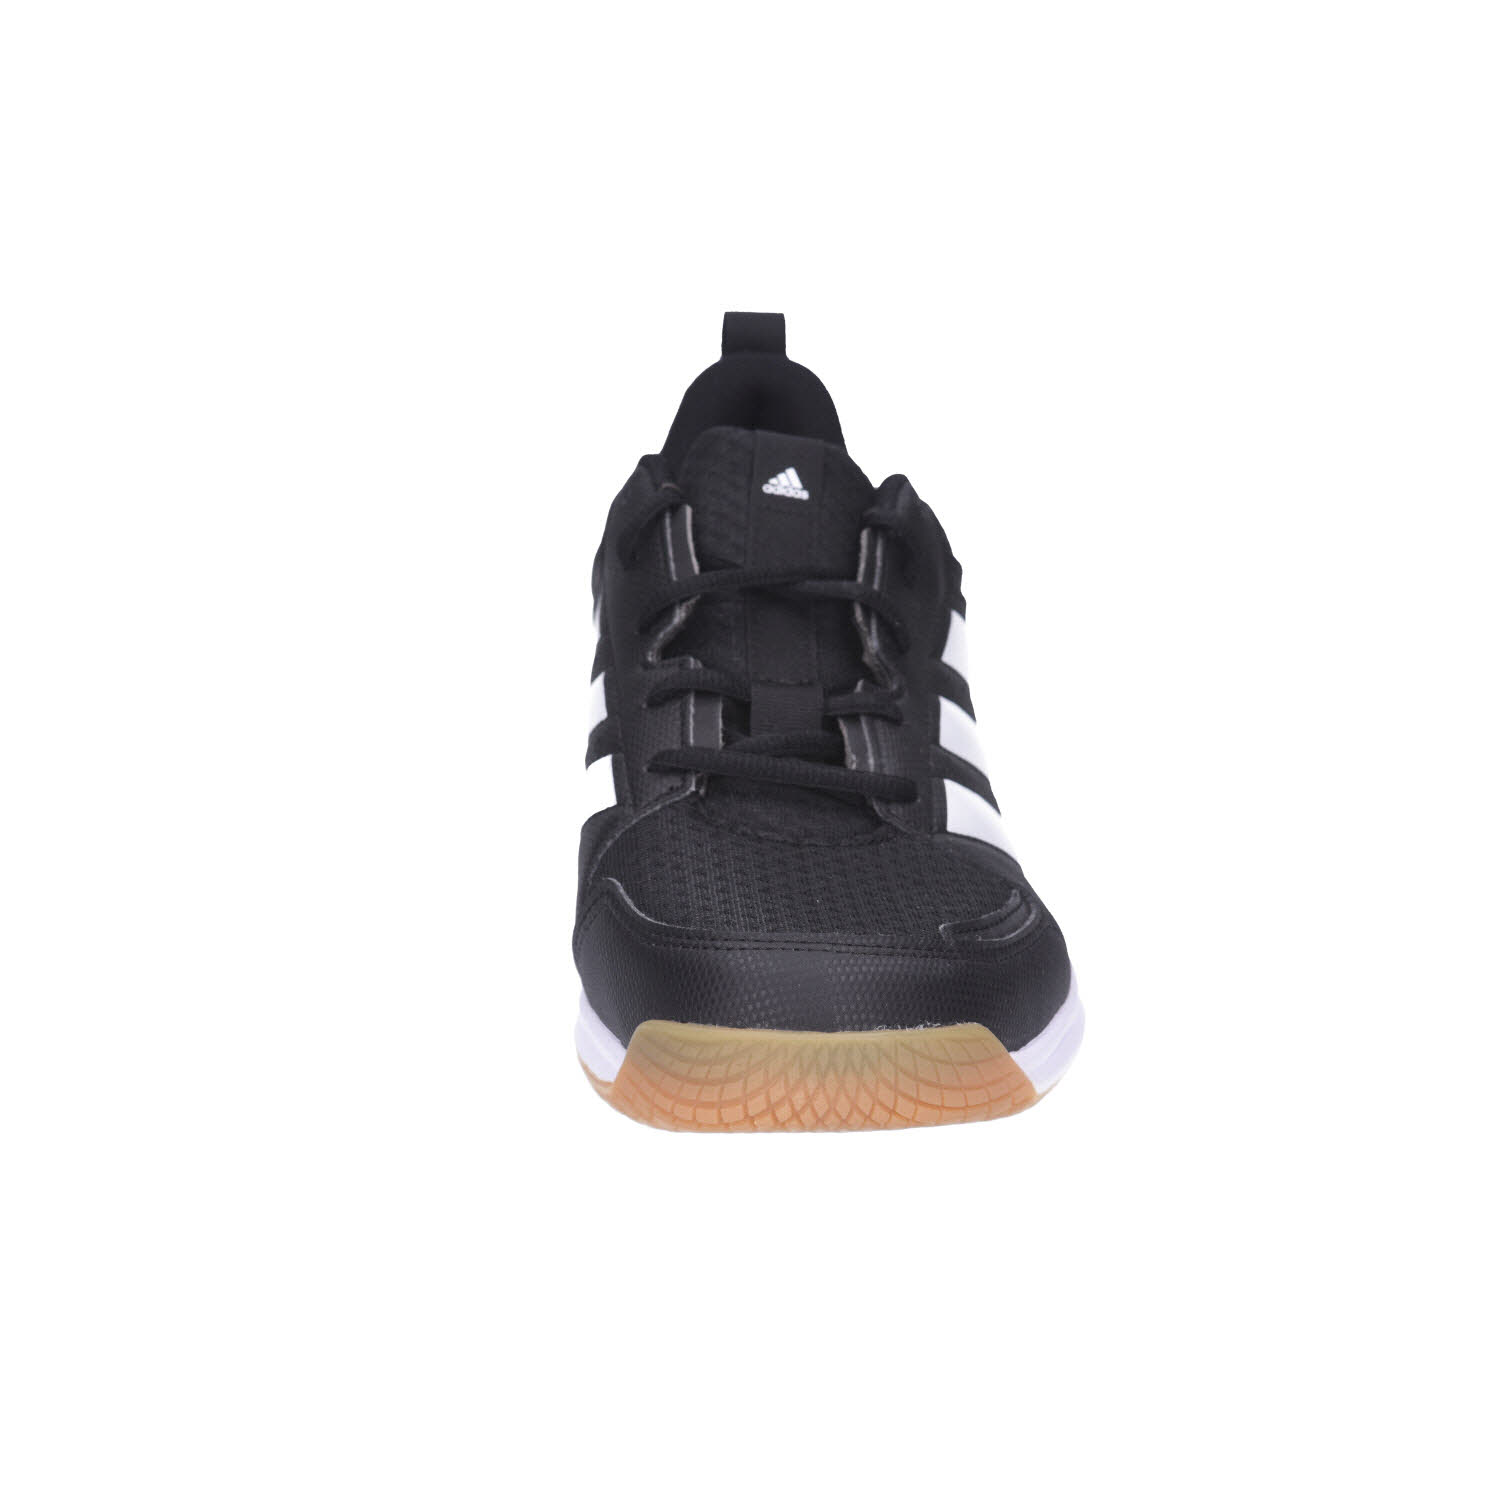 Adidas Ligra 7 M,CBLACK/FTWWHT/CBLACK schwarz